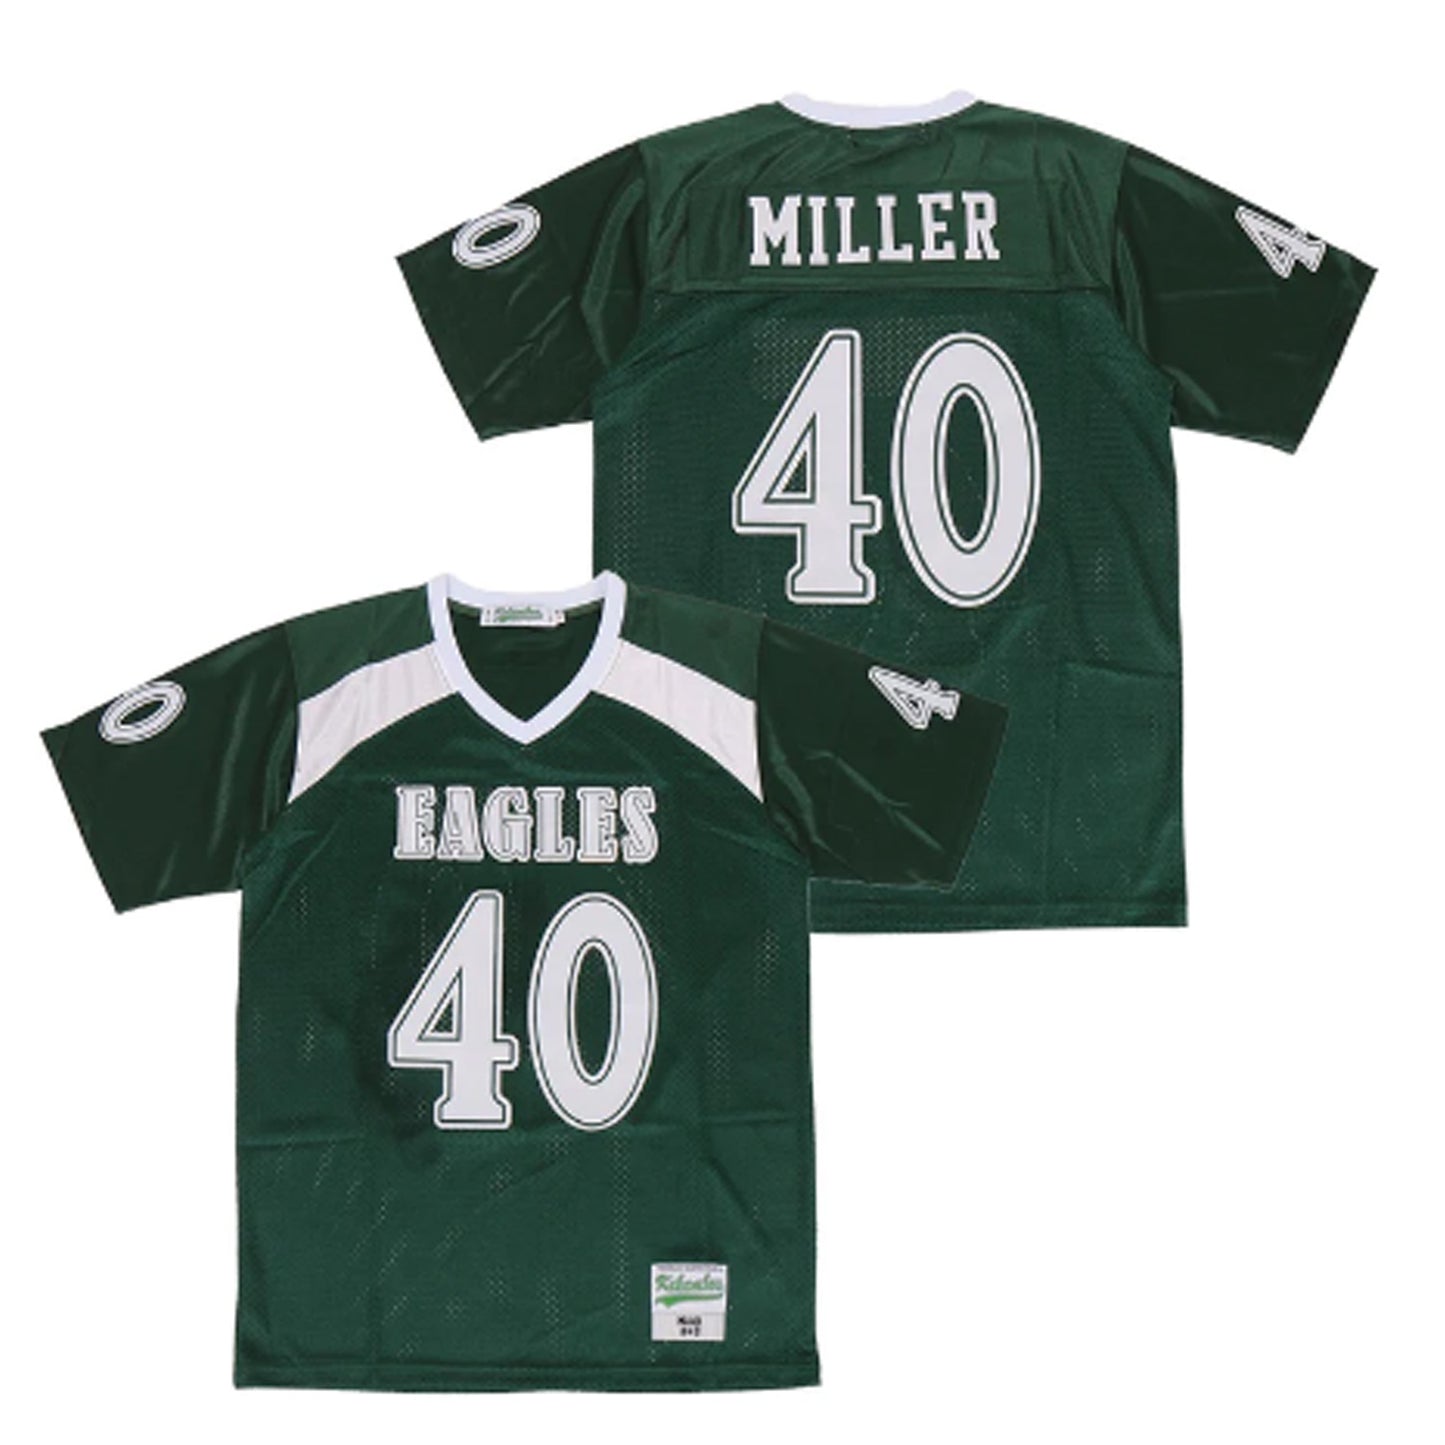 Von Miller Eagles High School Football 40 Jersey